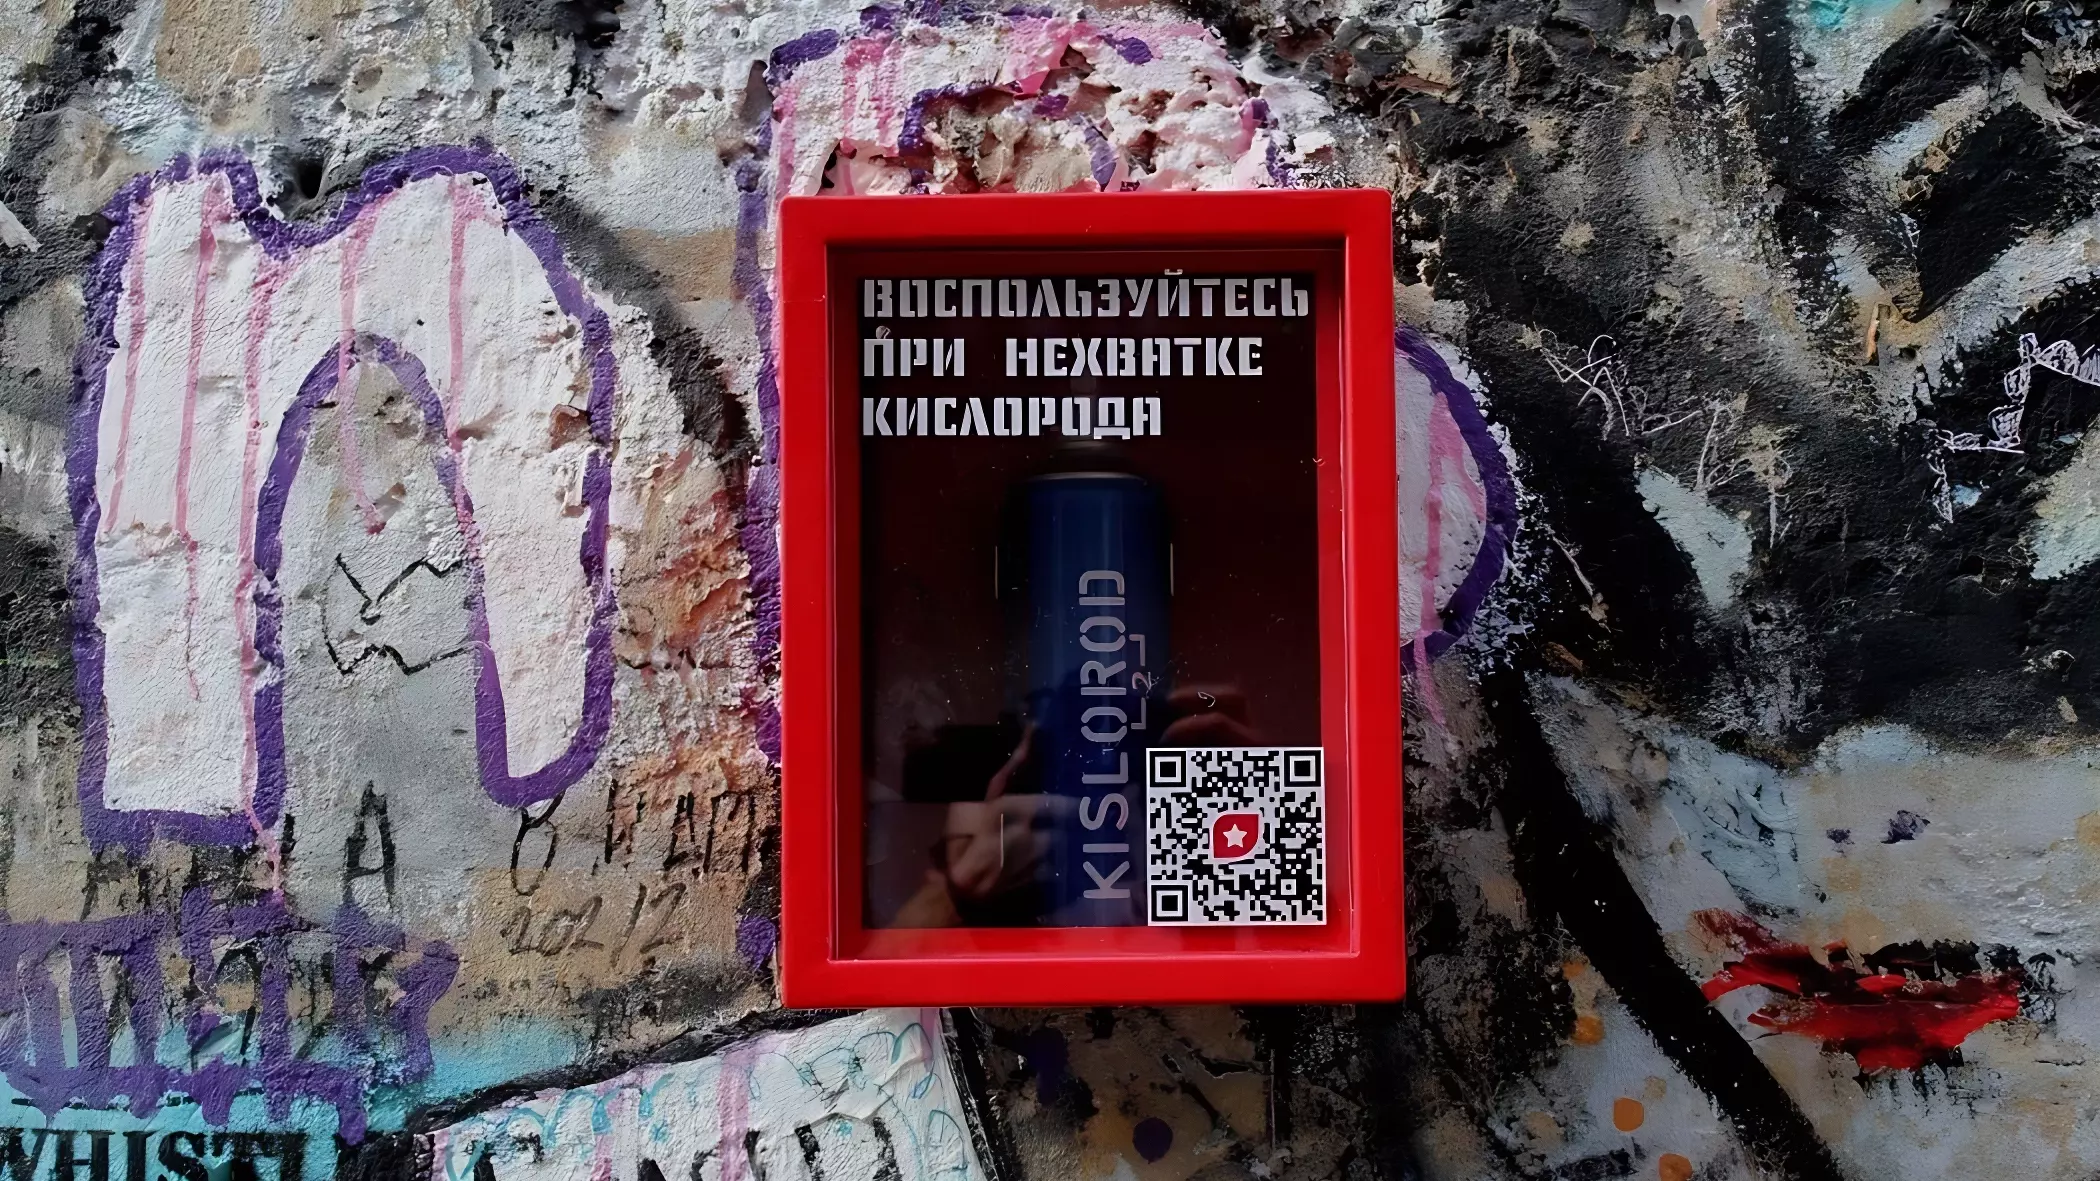 Ящики с кислородными баллонами исчезли со стен Екатеринбурга